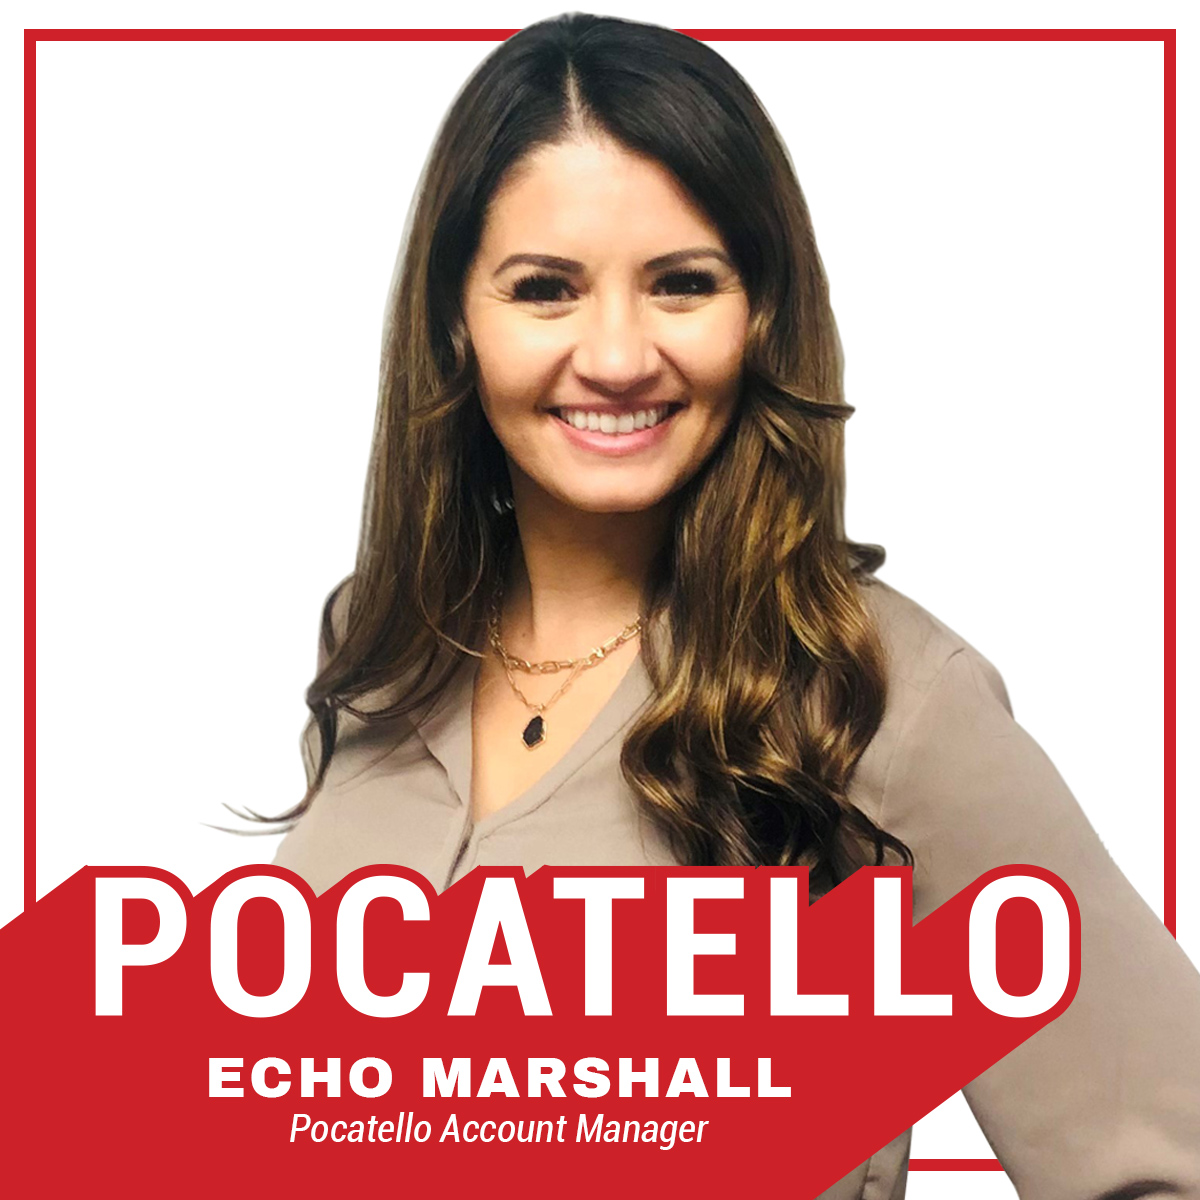 Welcome Echo Marshall